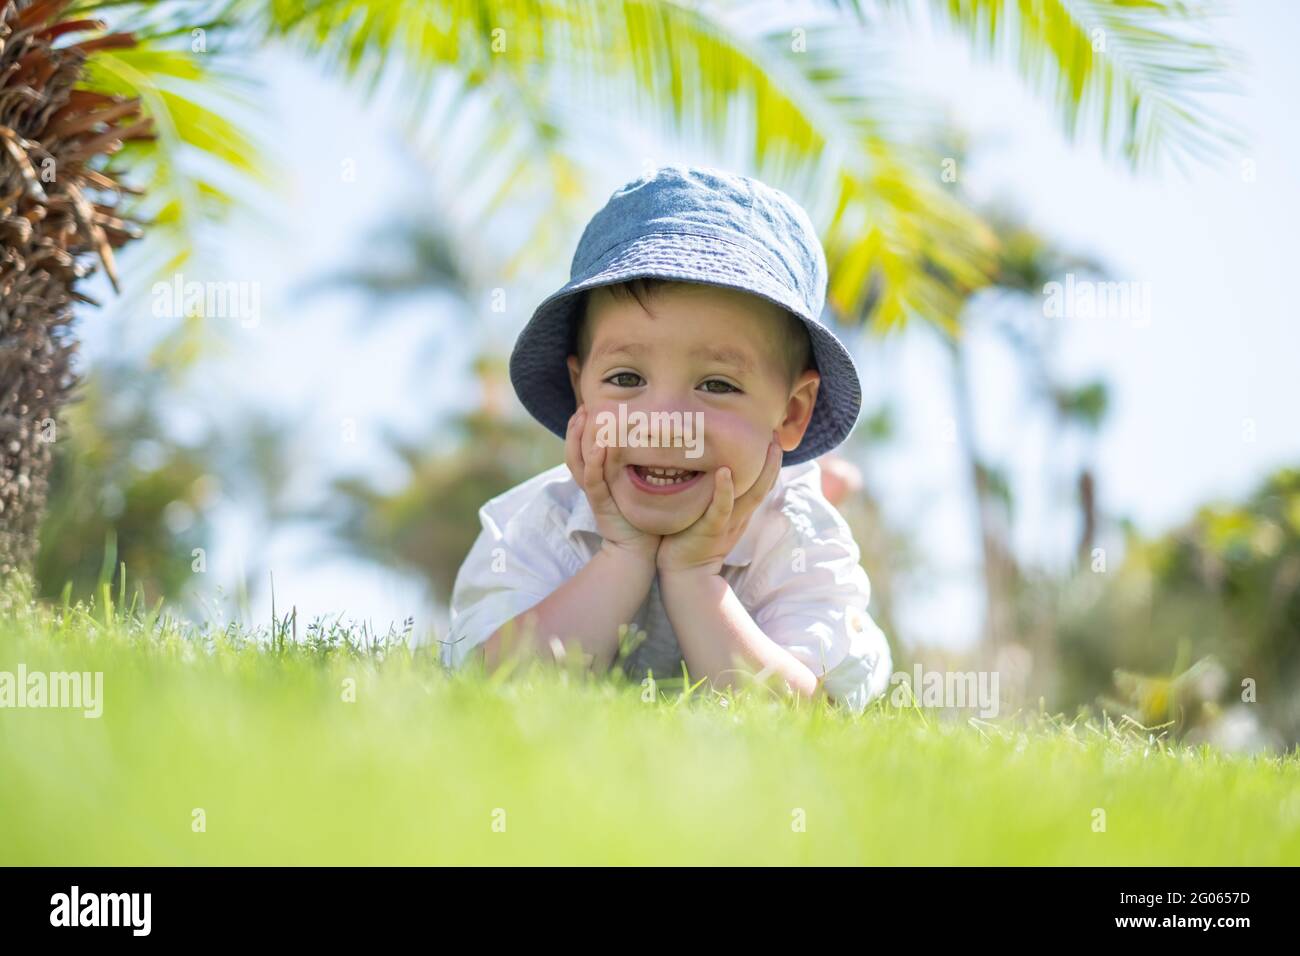 Kleiner Junge, der auf grünem Gras auf Rasen unter Palmen liegt. Blauer Himmel auf dem Hintergrund. Urlaub und glückliche Kindheit Konzept Stockfoto